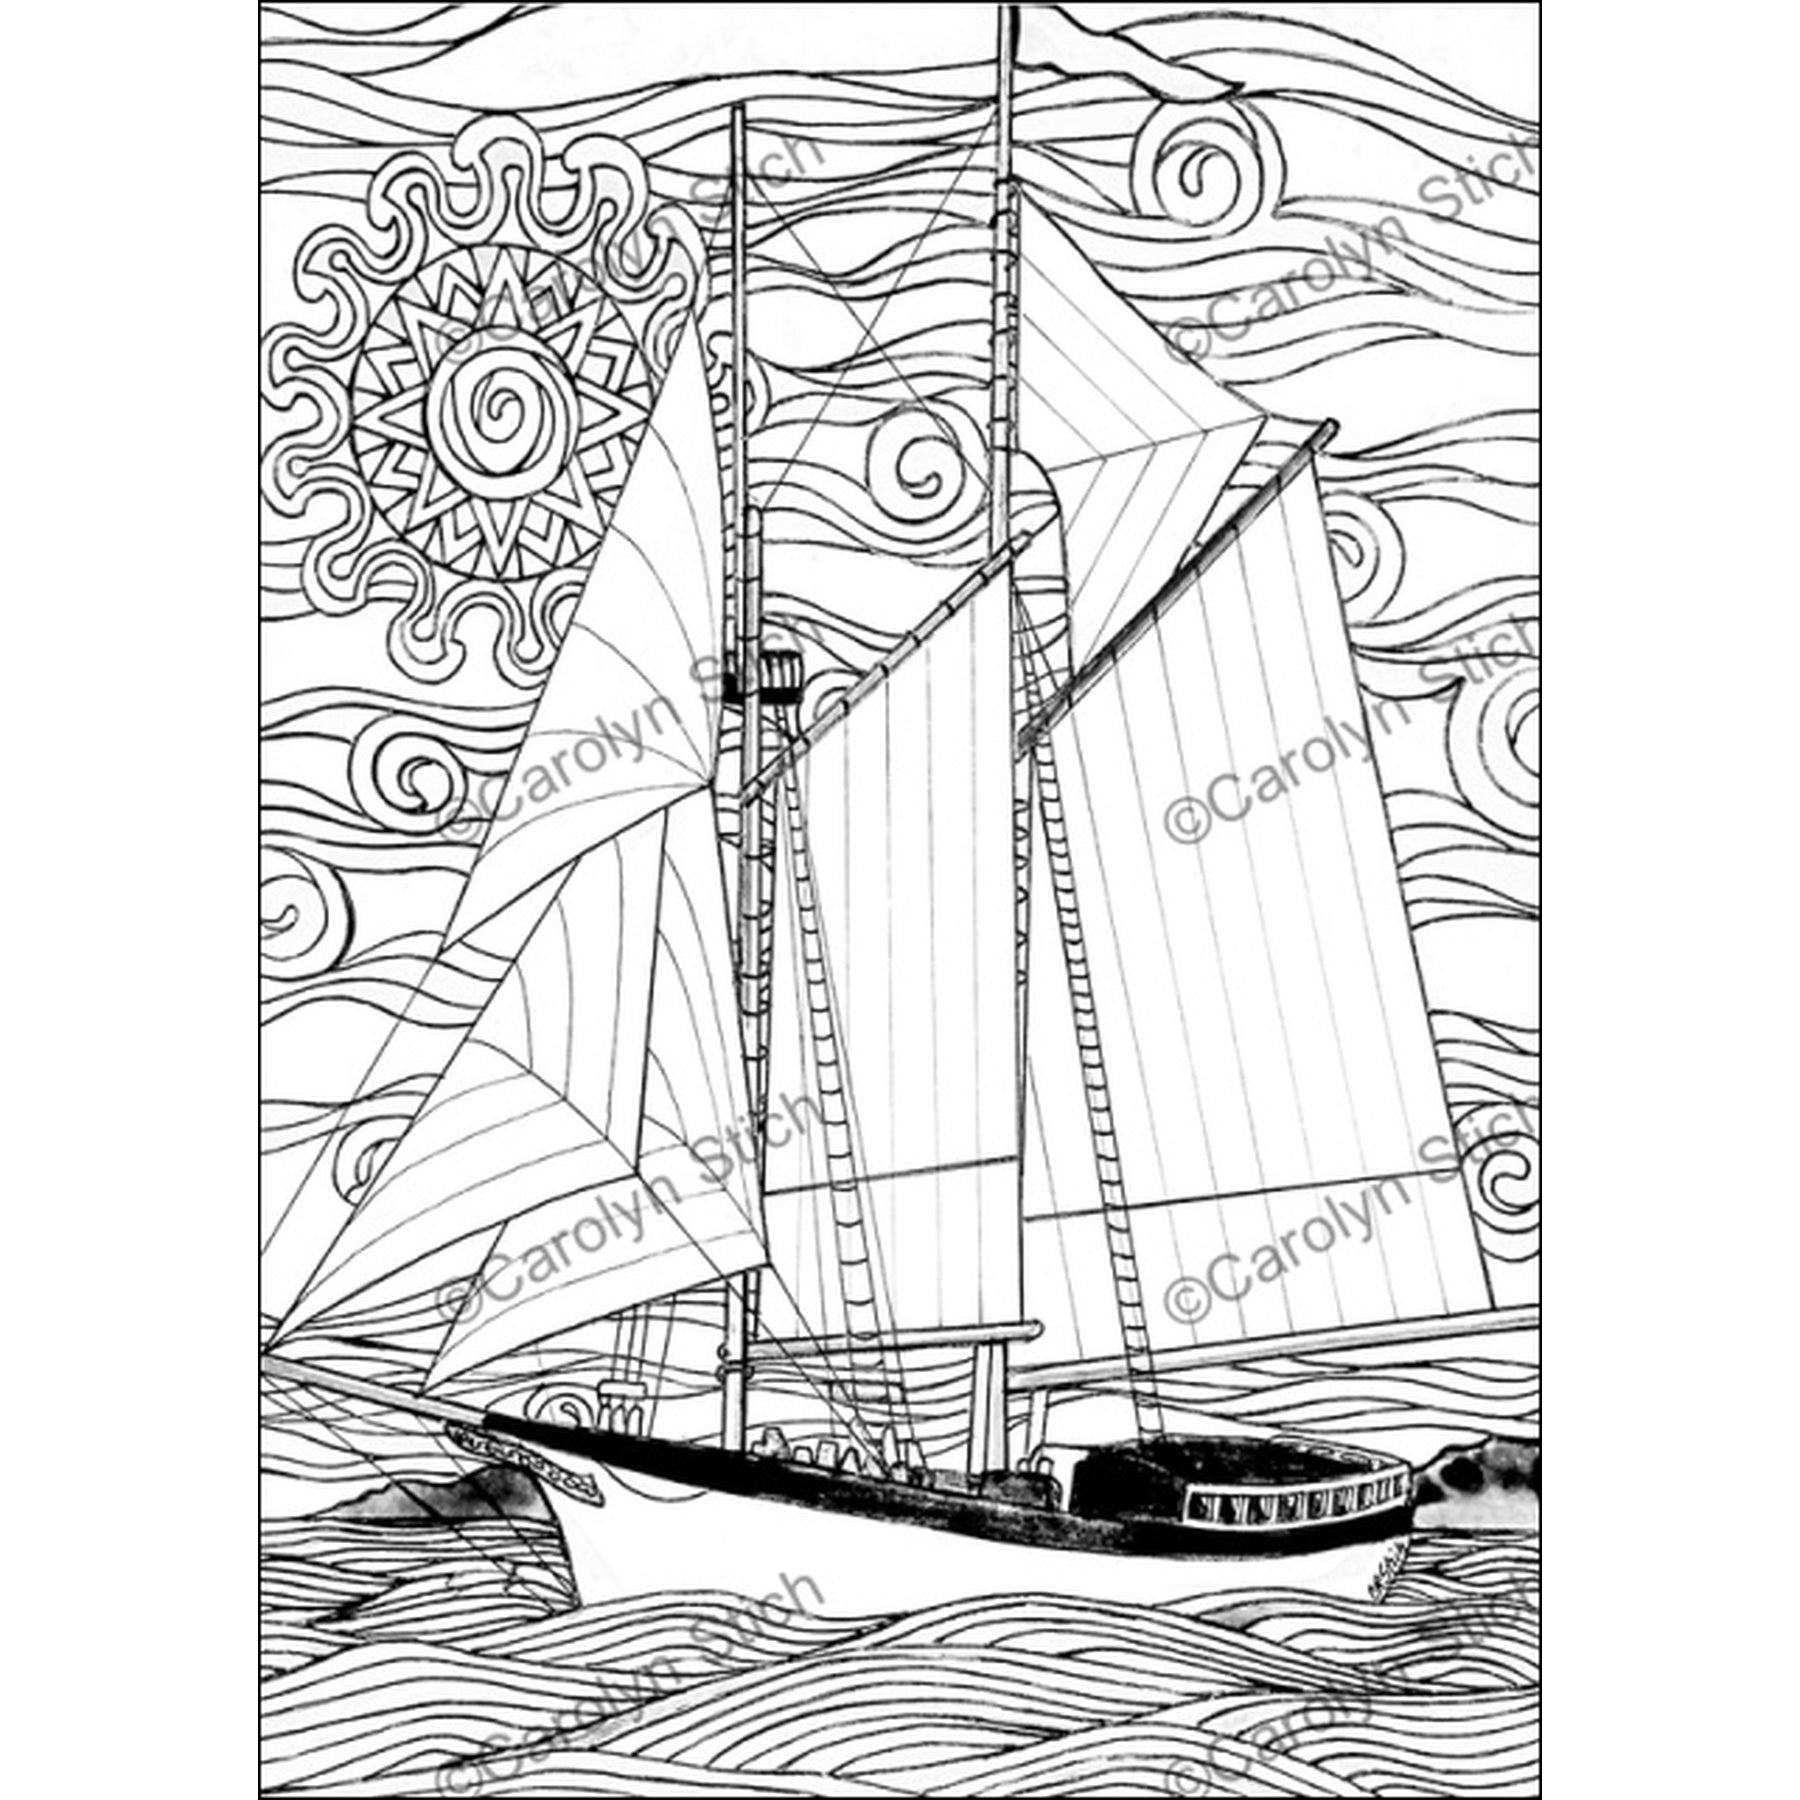 Tall Ship Manitou, rug hooking pattern